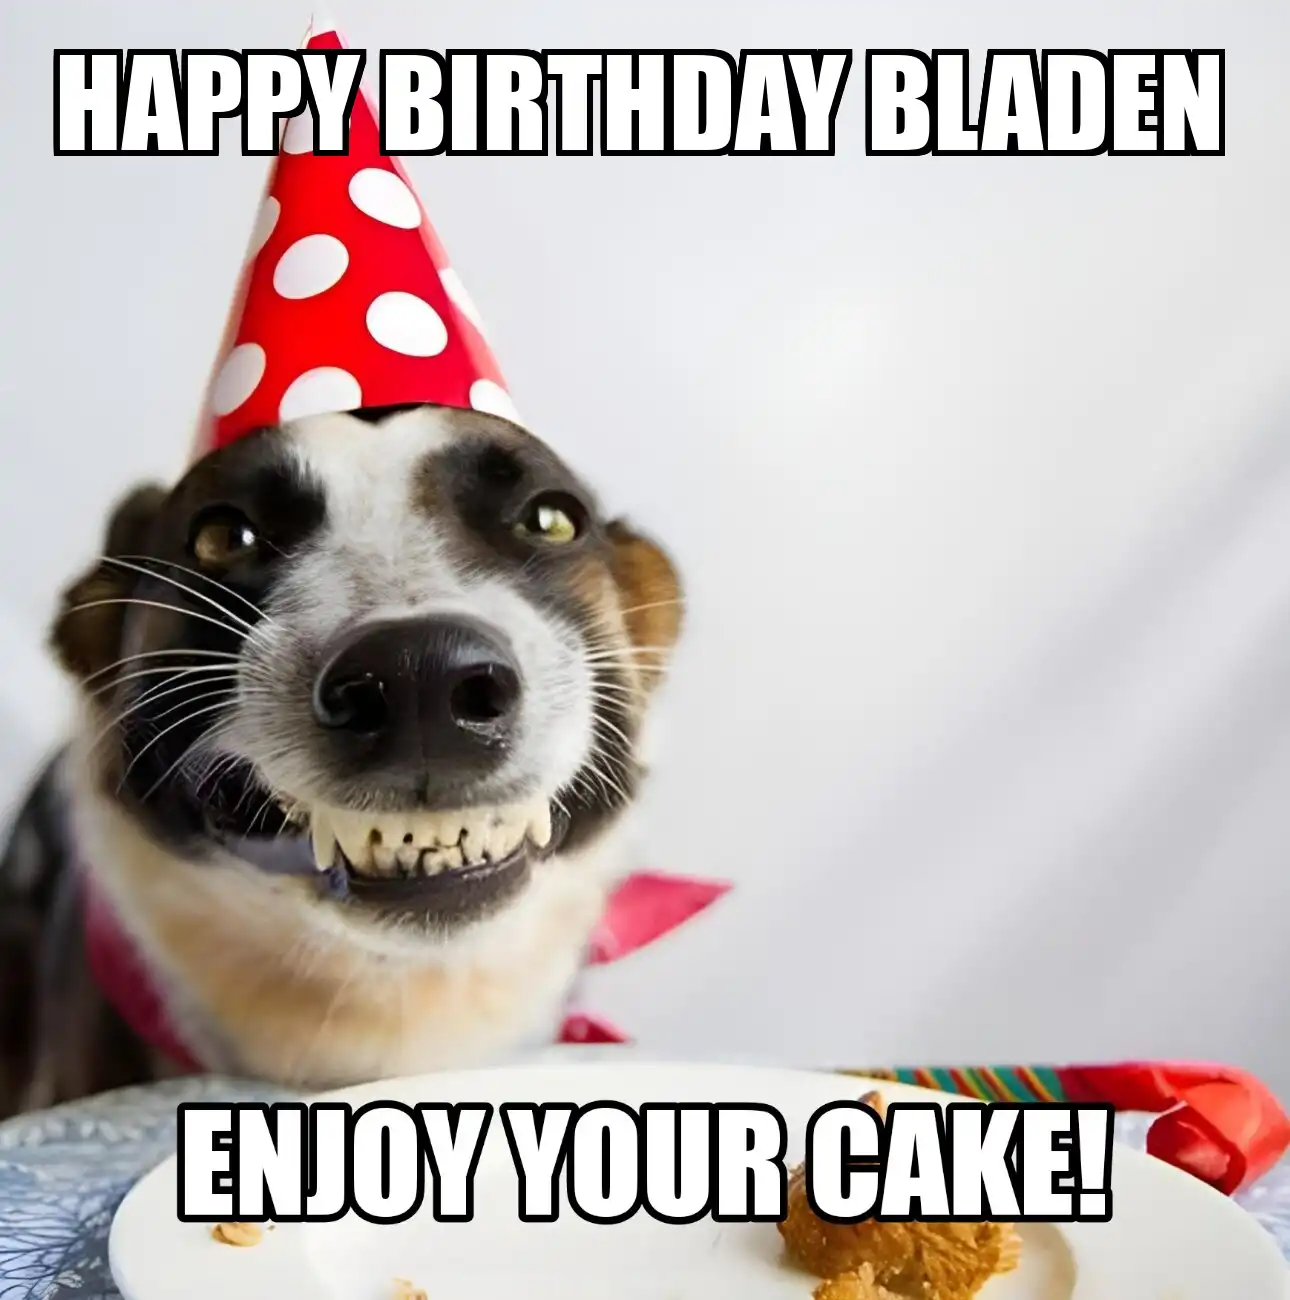 Happy Birthday Bladen Enjoy Your Cake Dog Meme